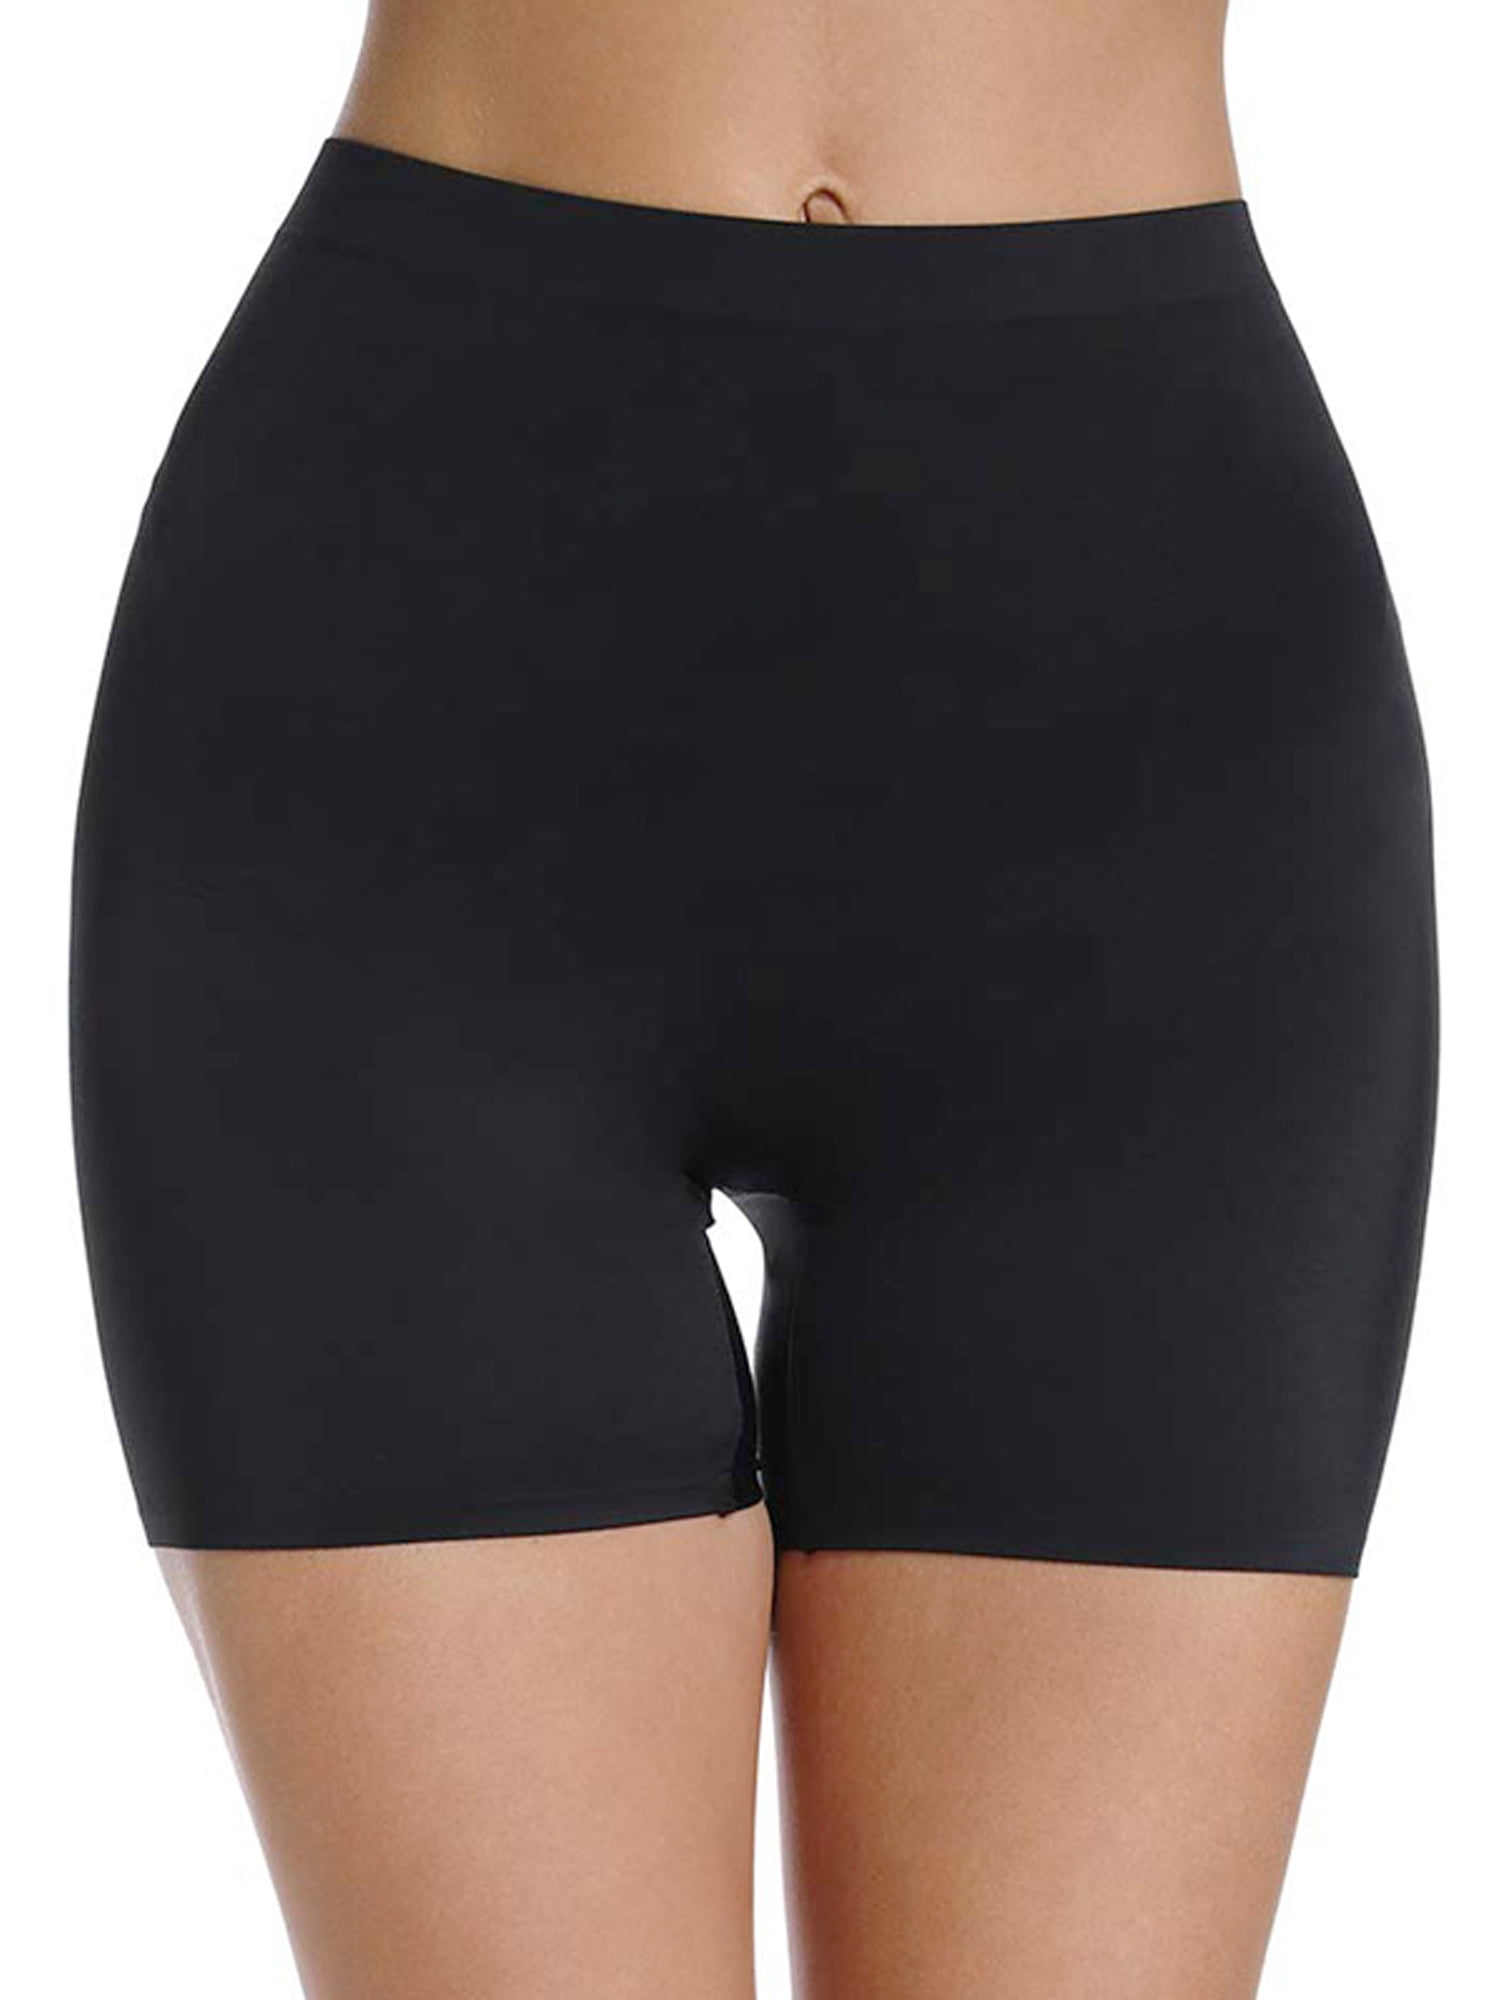 FITVALEN Anti Chafing Underwear Slip Shorts for Women Under Dress